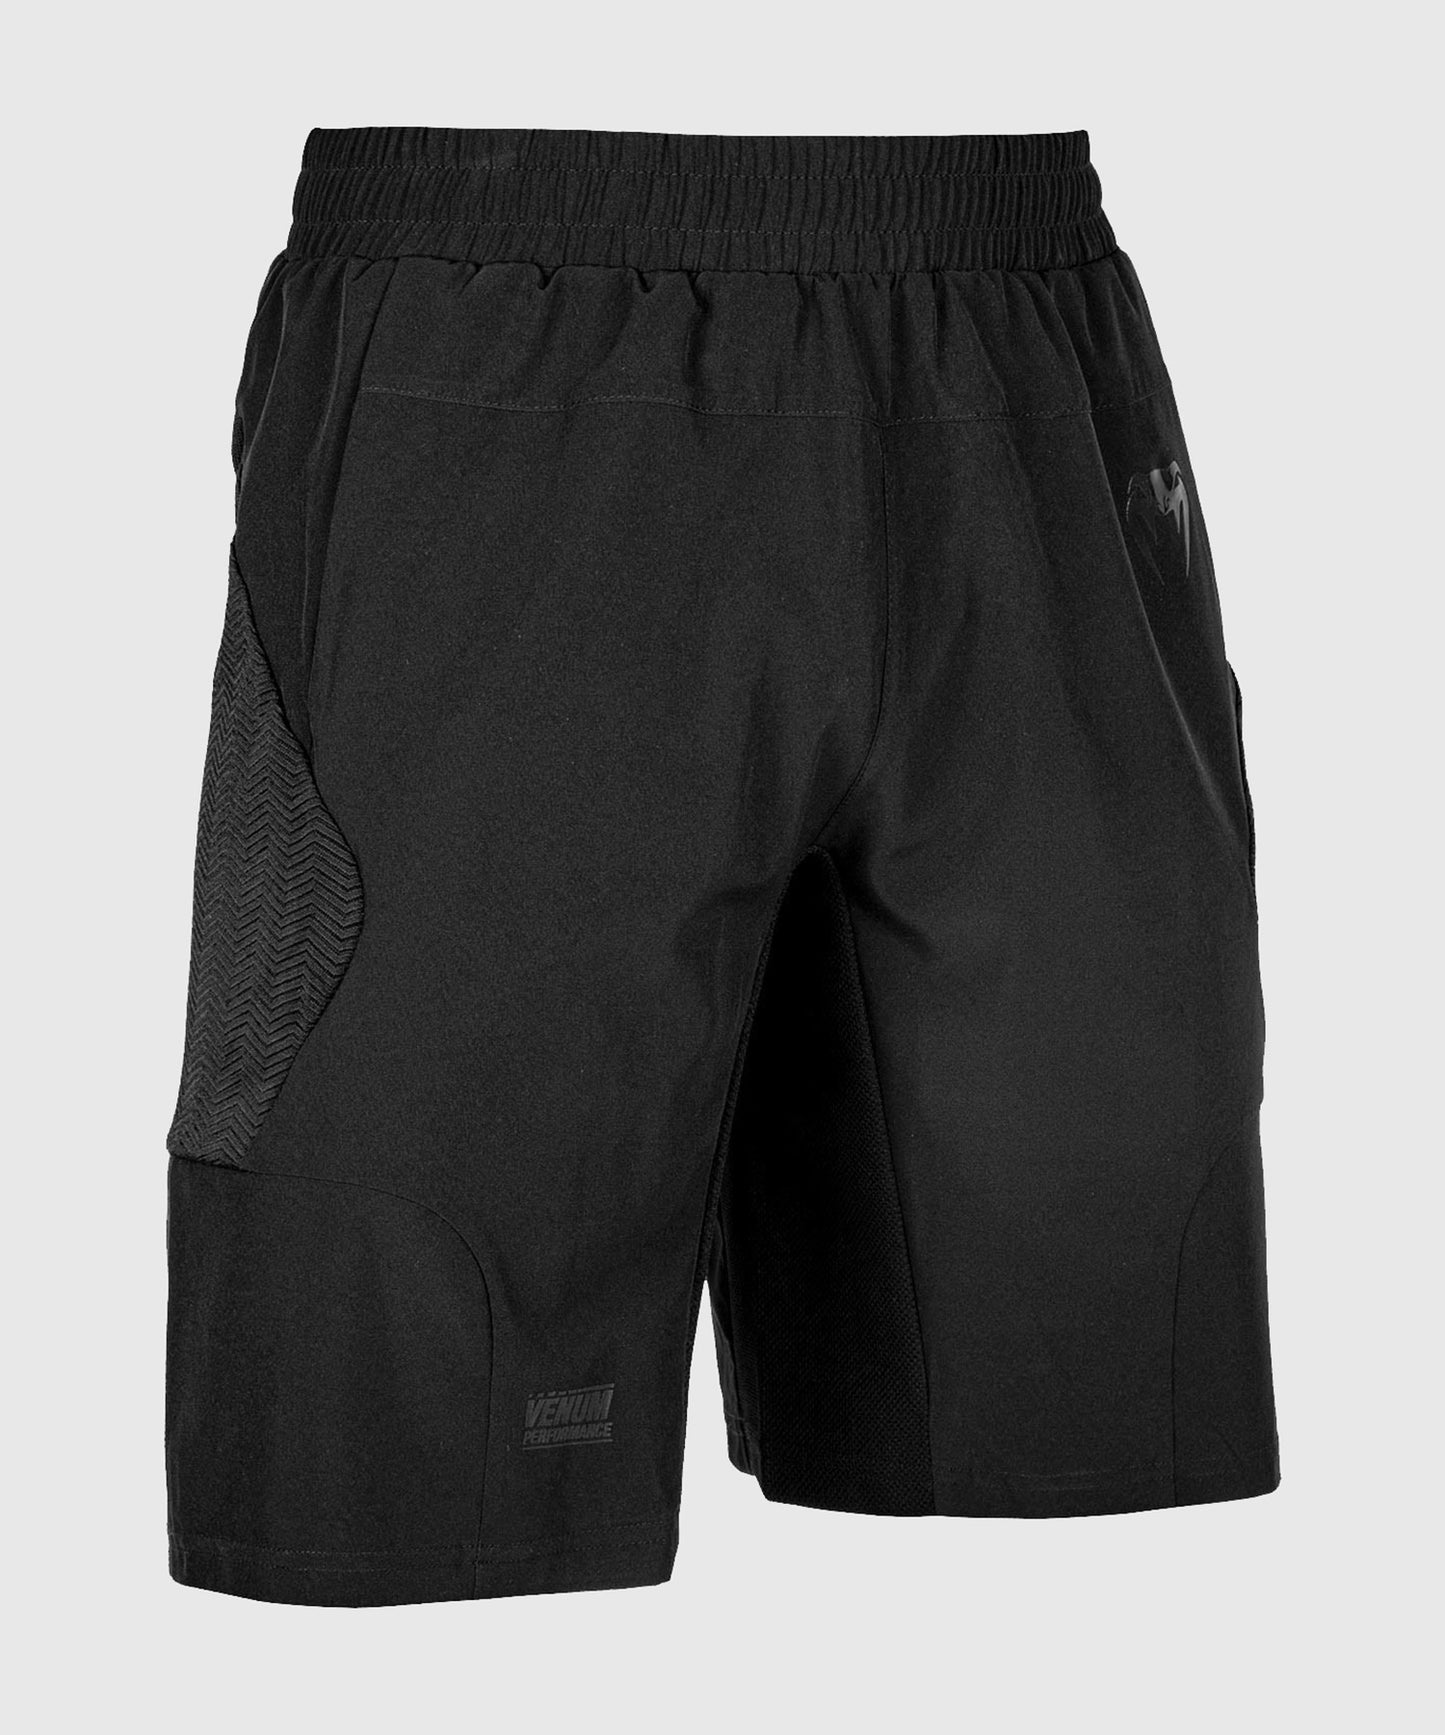 Pantalón corto de entrenamiento Venum G-Fit - Negro